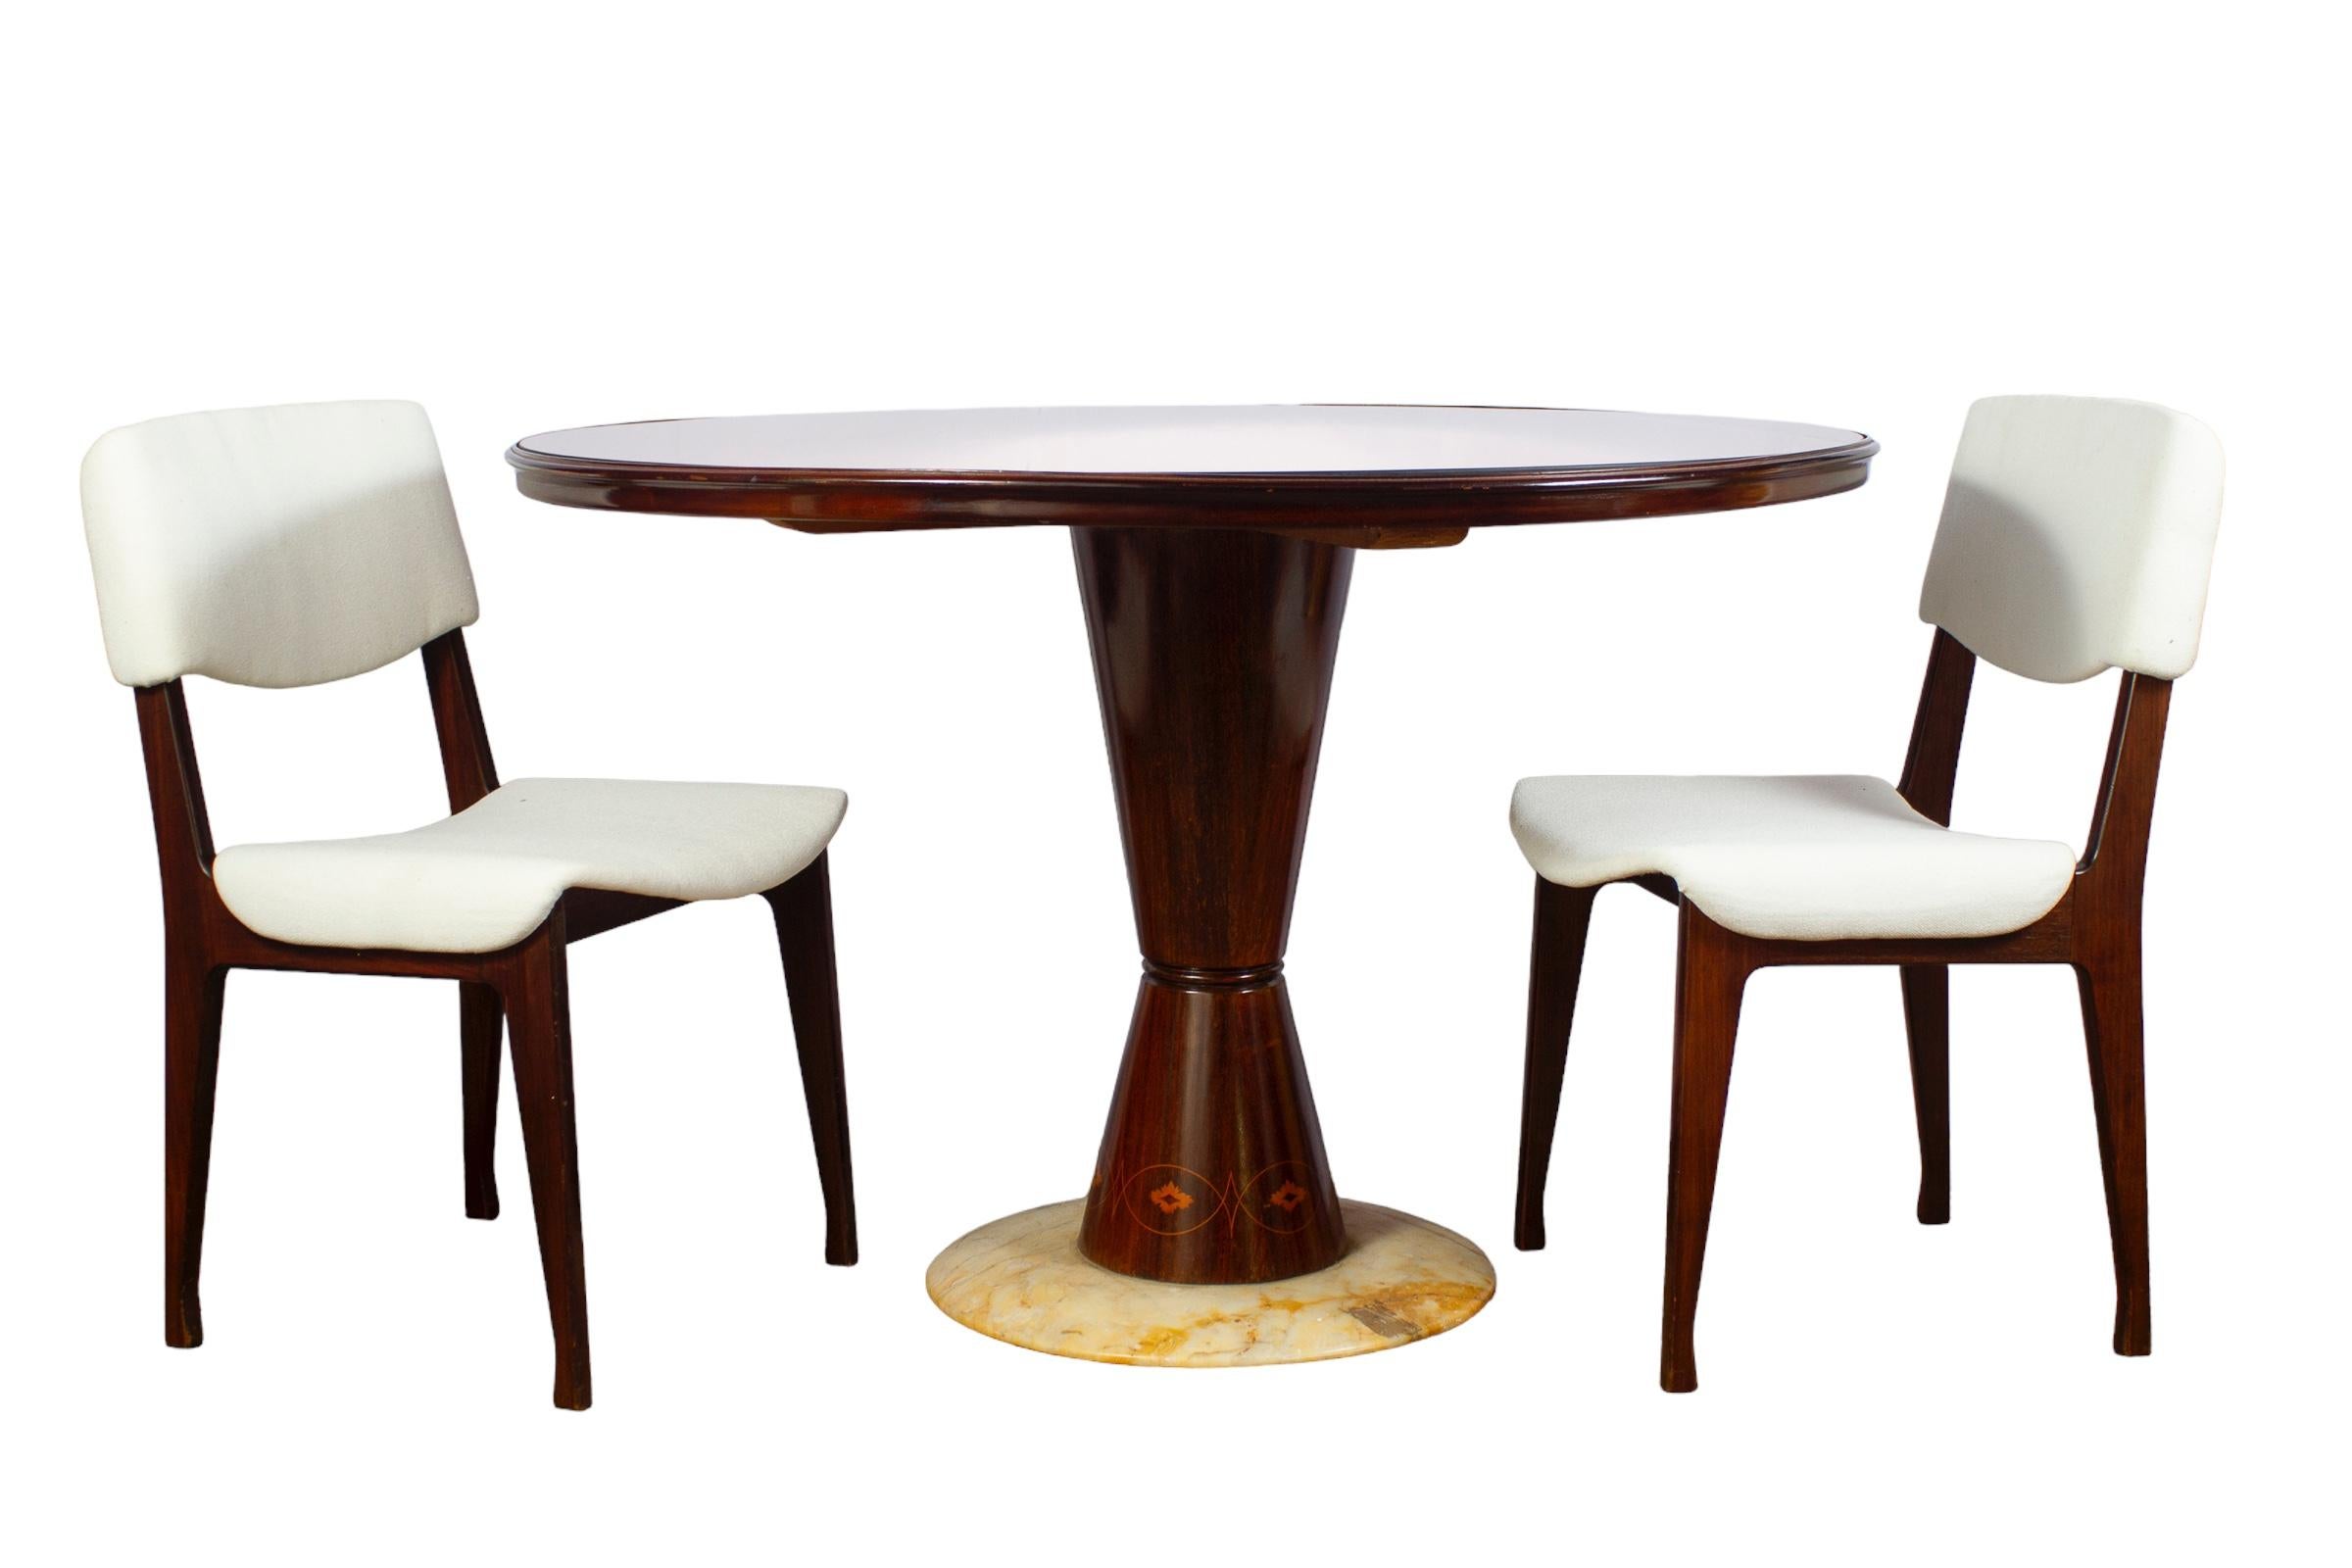 Ensemble de six pièces italiennes  chaises en bois avec assise en tissu blanc.
Fabriqué en Italie 1950'. Le bois est en parfait état vintage.
Chaque chaise a été fabriquée de main de maître, a des proportions absolument magnifiques et est